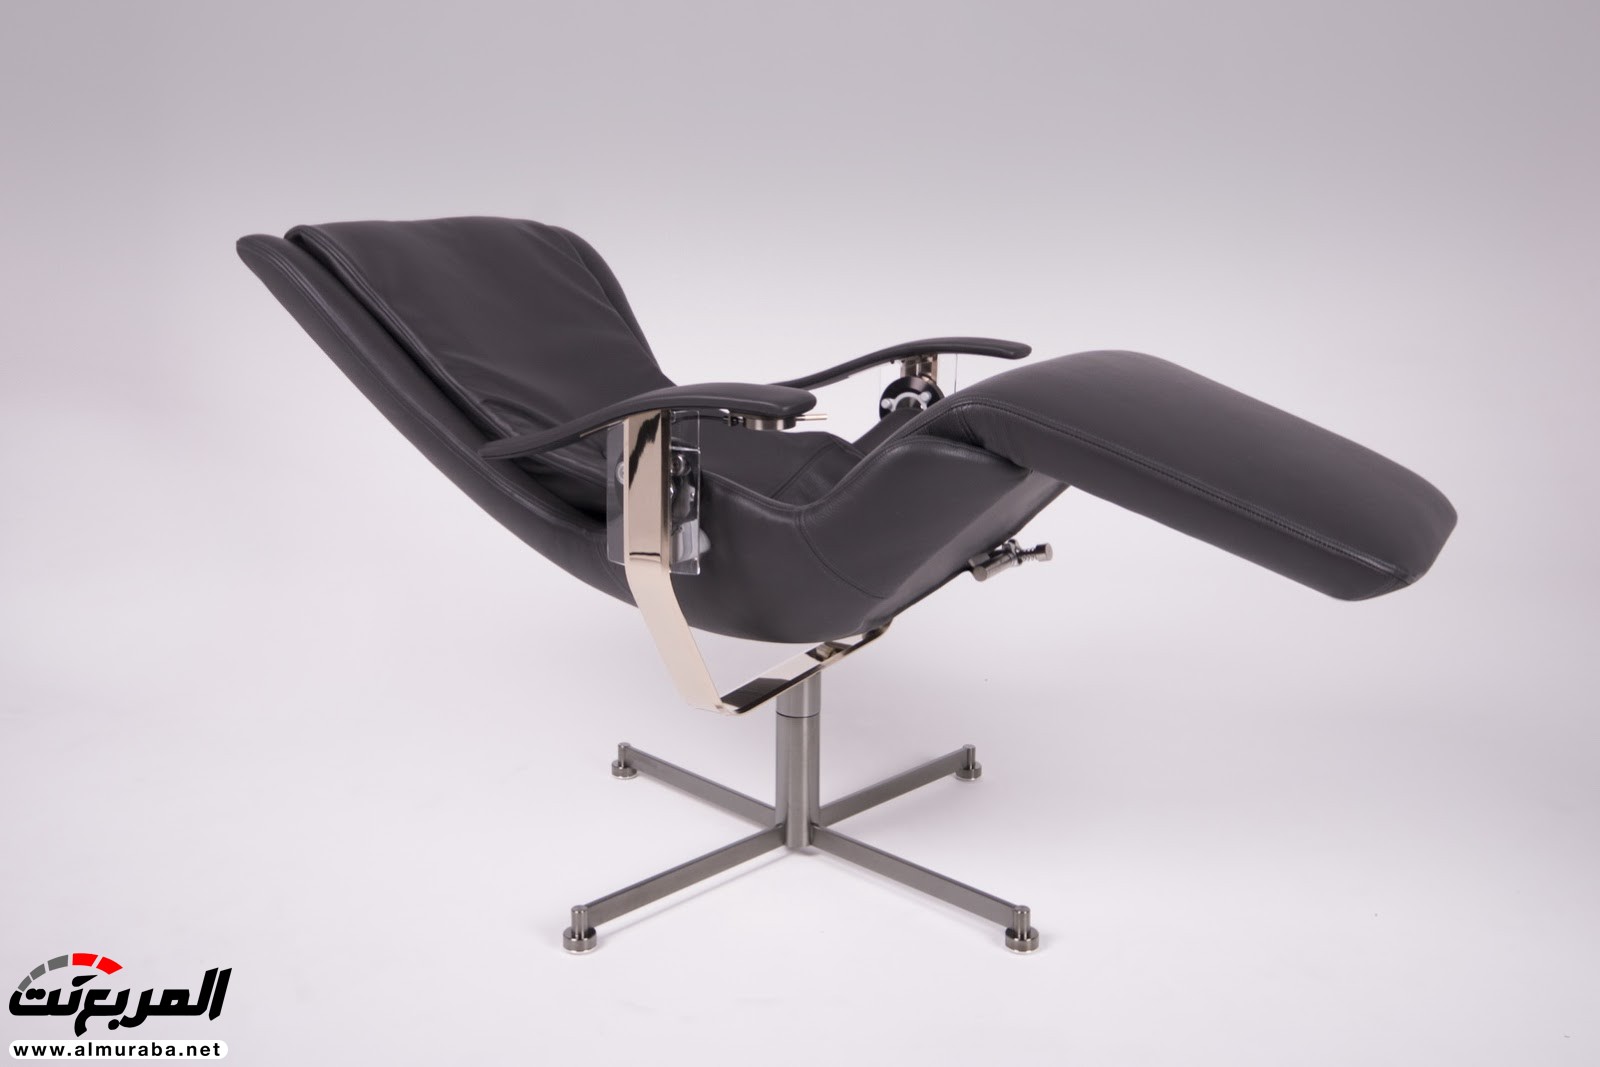 تعرف على مواصفات وسعر أغلى كرسي في العالم من شركة رولزرويس 5